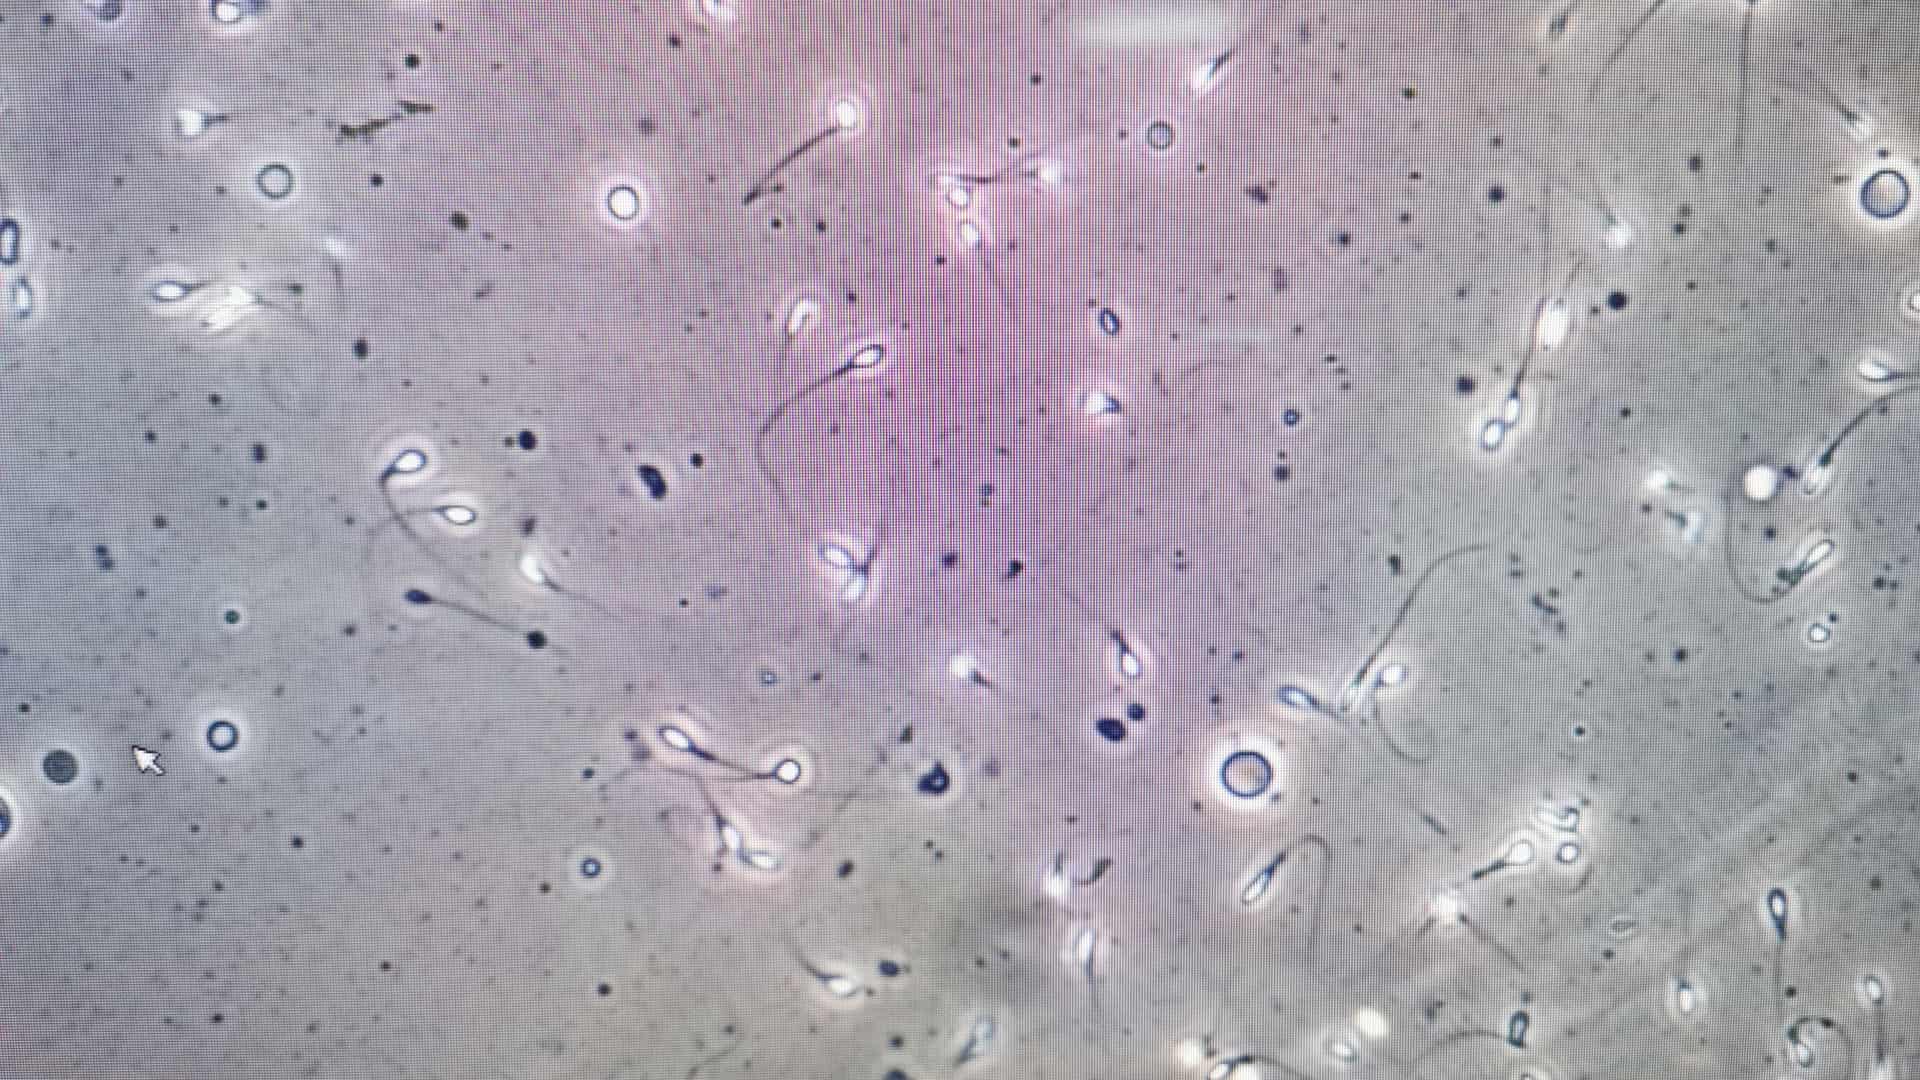 Vista en el microscopio de una muestra de semen para rpresentar el lavado seminal que es una prueba de fertilidad masculina